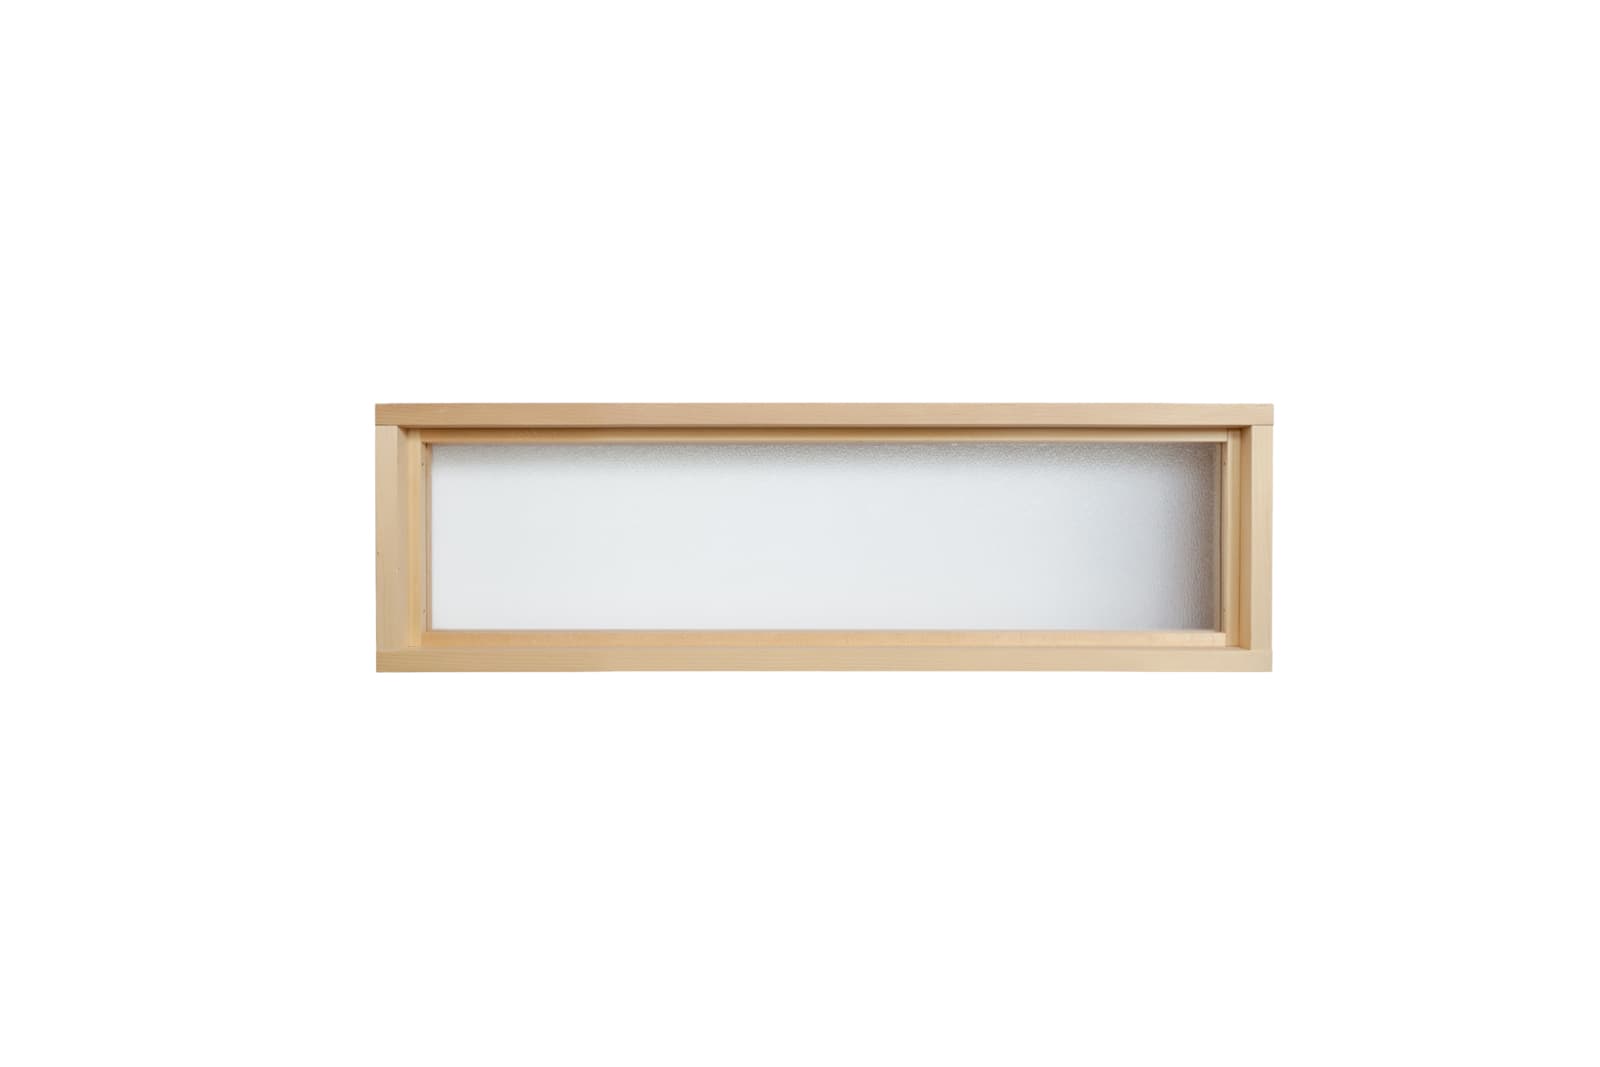 木製室内窓 横長はめ殺しタイプ サイズオーダー DW-DR008-06-G164 型板ガラス（梨地模様）も選べます